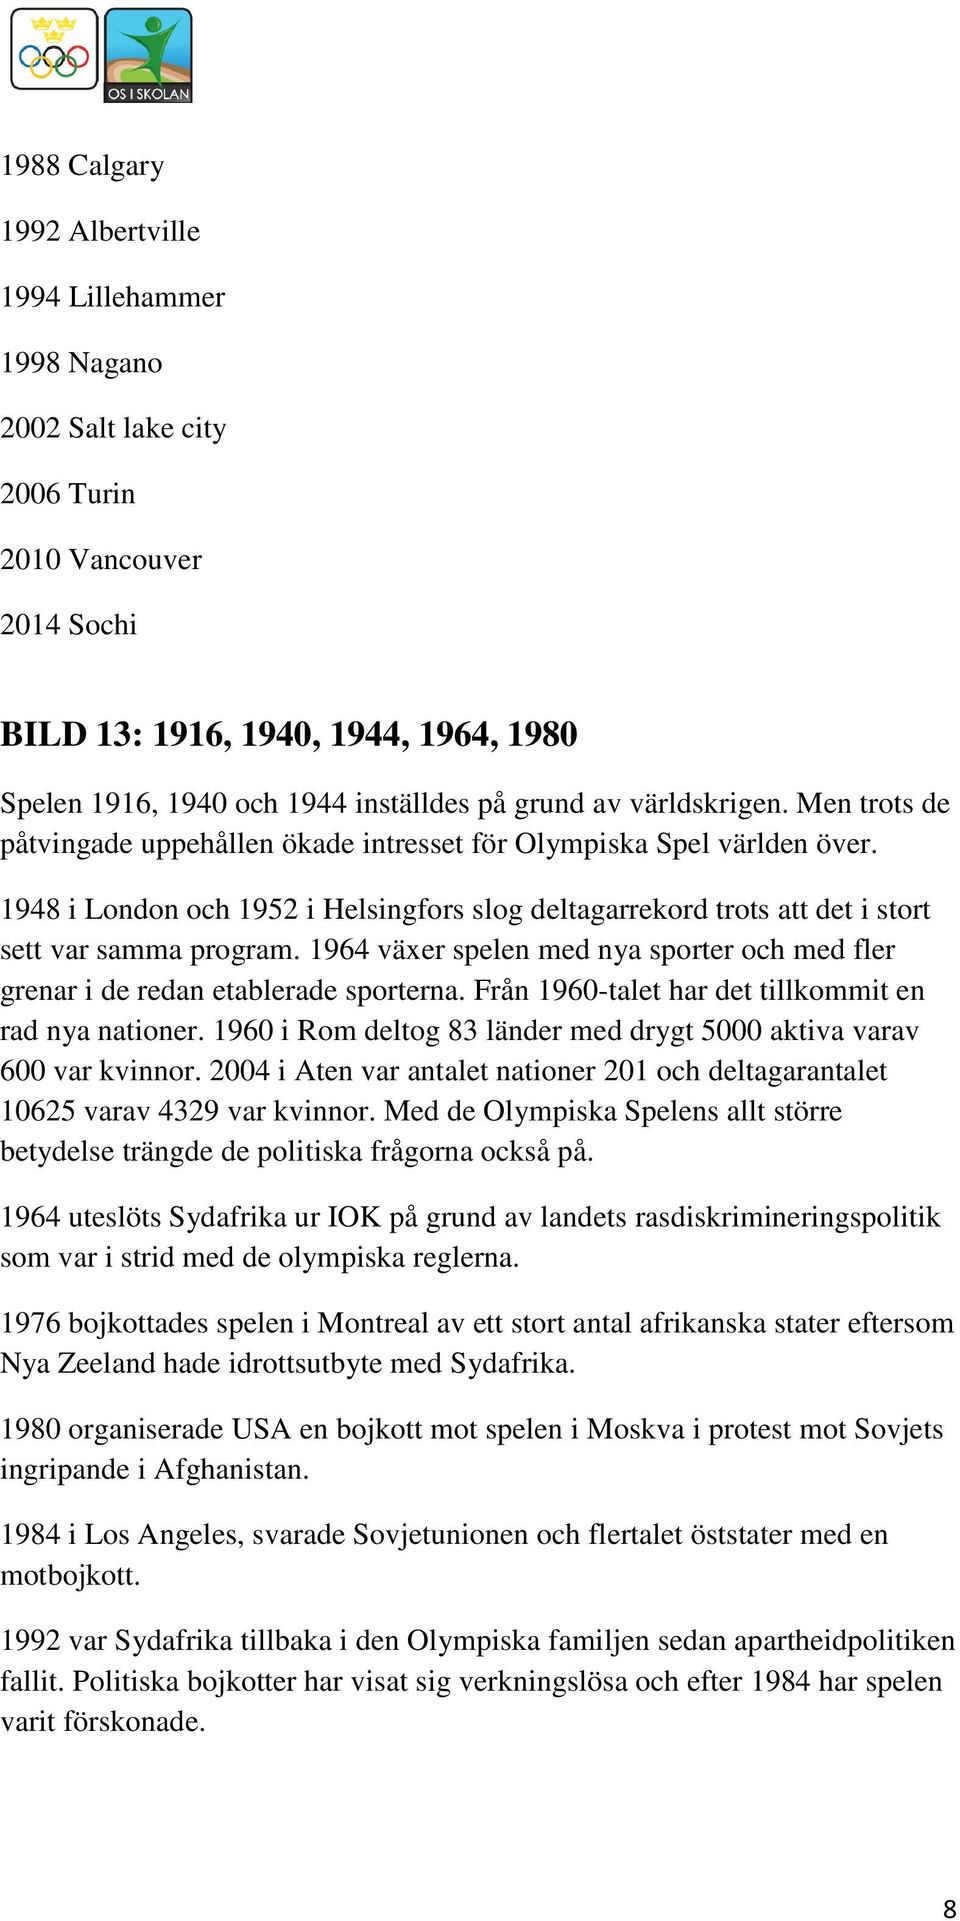 1948 i London och 1952 i Helsingfors slog deltagarrekord trots att det i stort sett var samma program. 1964 växer spelen med nya sporter och med fler grenar i de redan etablerade sporterna.